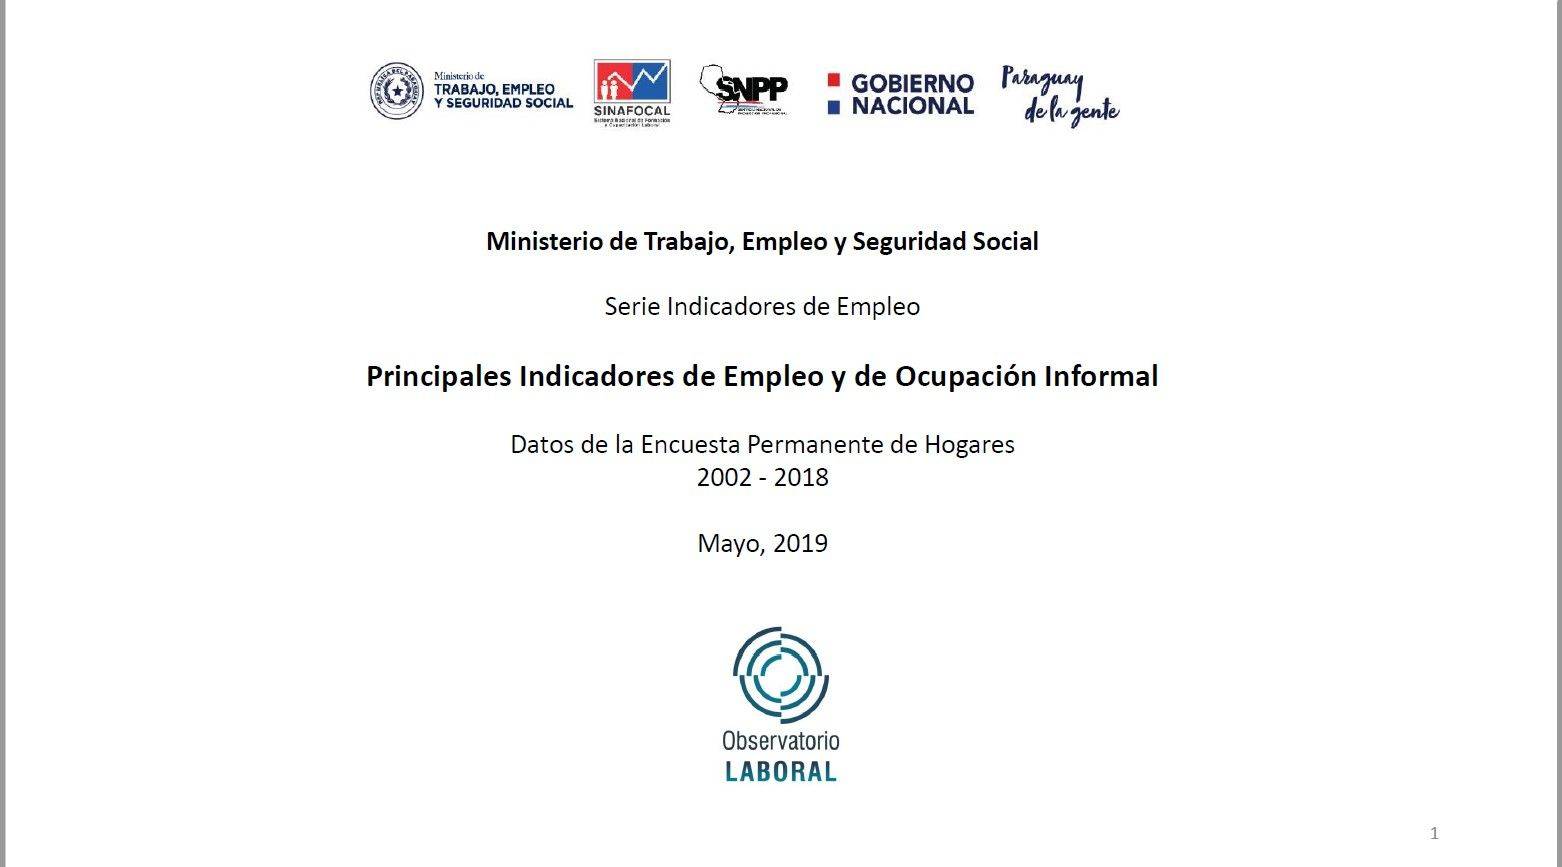 Principales_Indicadores_de_Empleo_y_de_Ocupacion_Informal_2002-2018_2.jpg